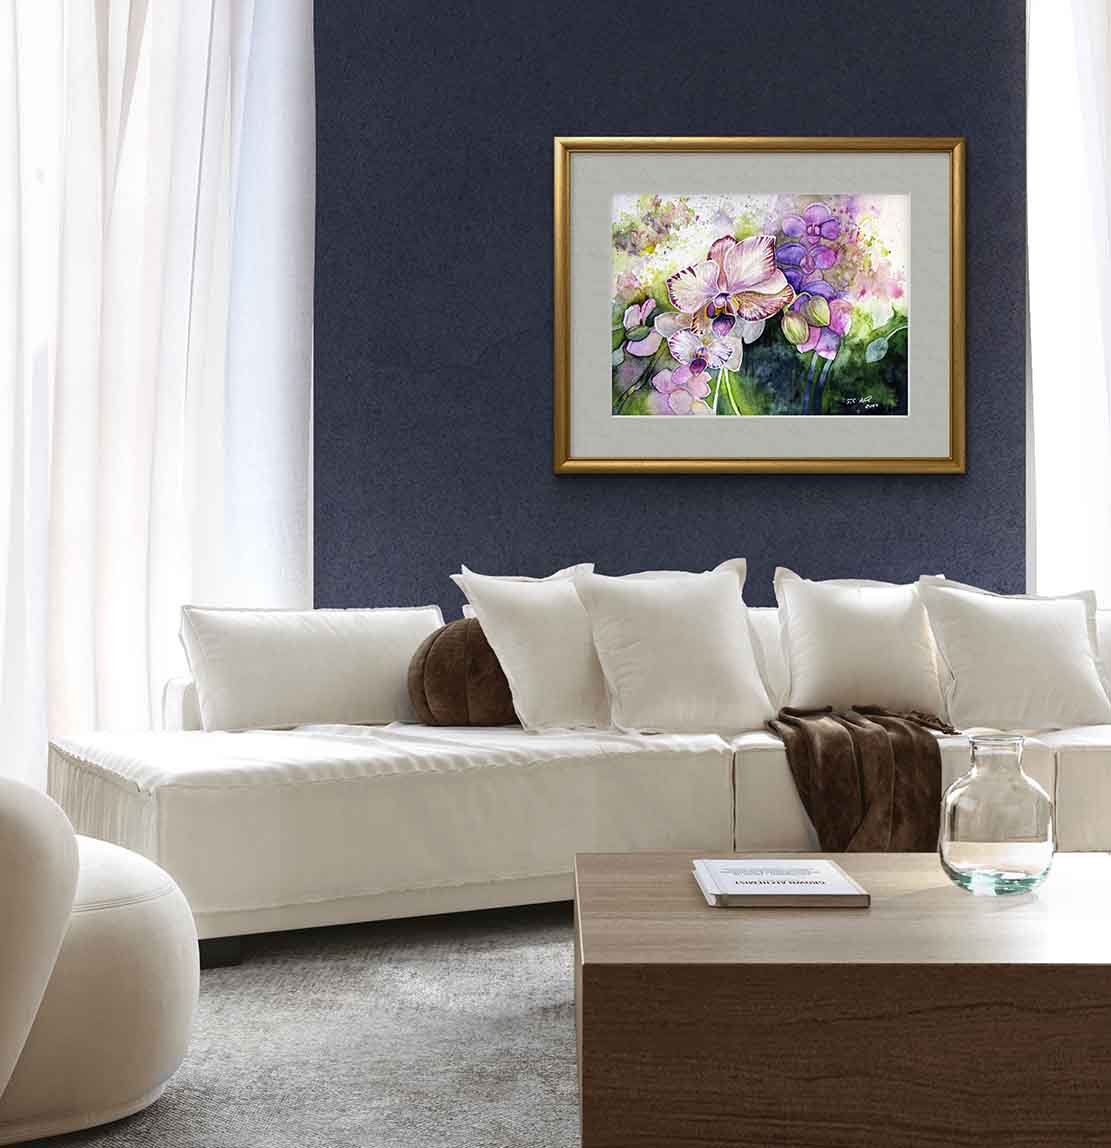 Farbspiel mit Orchideenblüten (c) Aquarell von Frank Koebsch - Beispiel 13für eine Rahmung an einer Wand